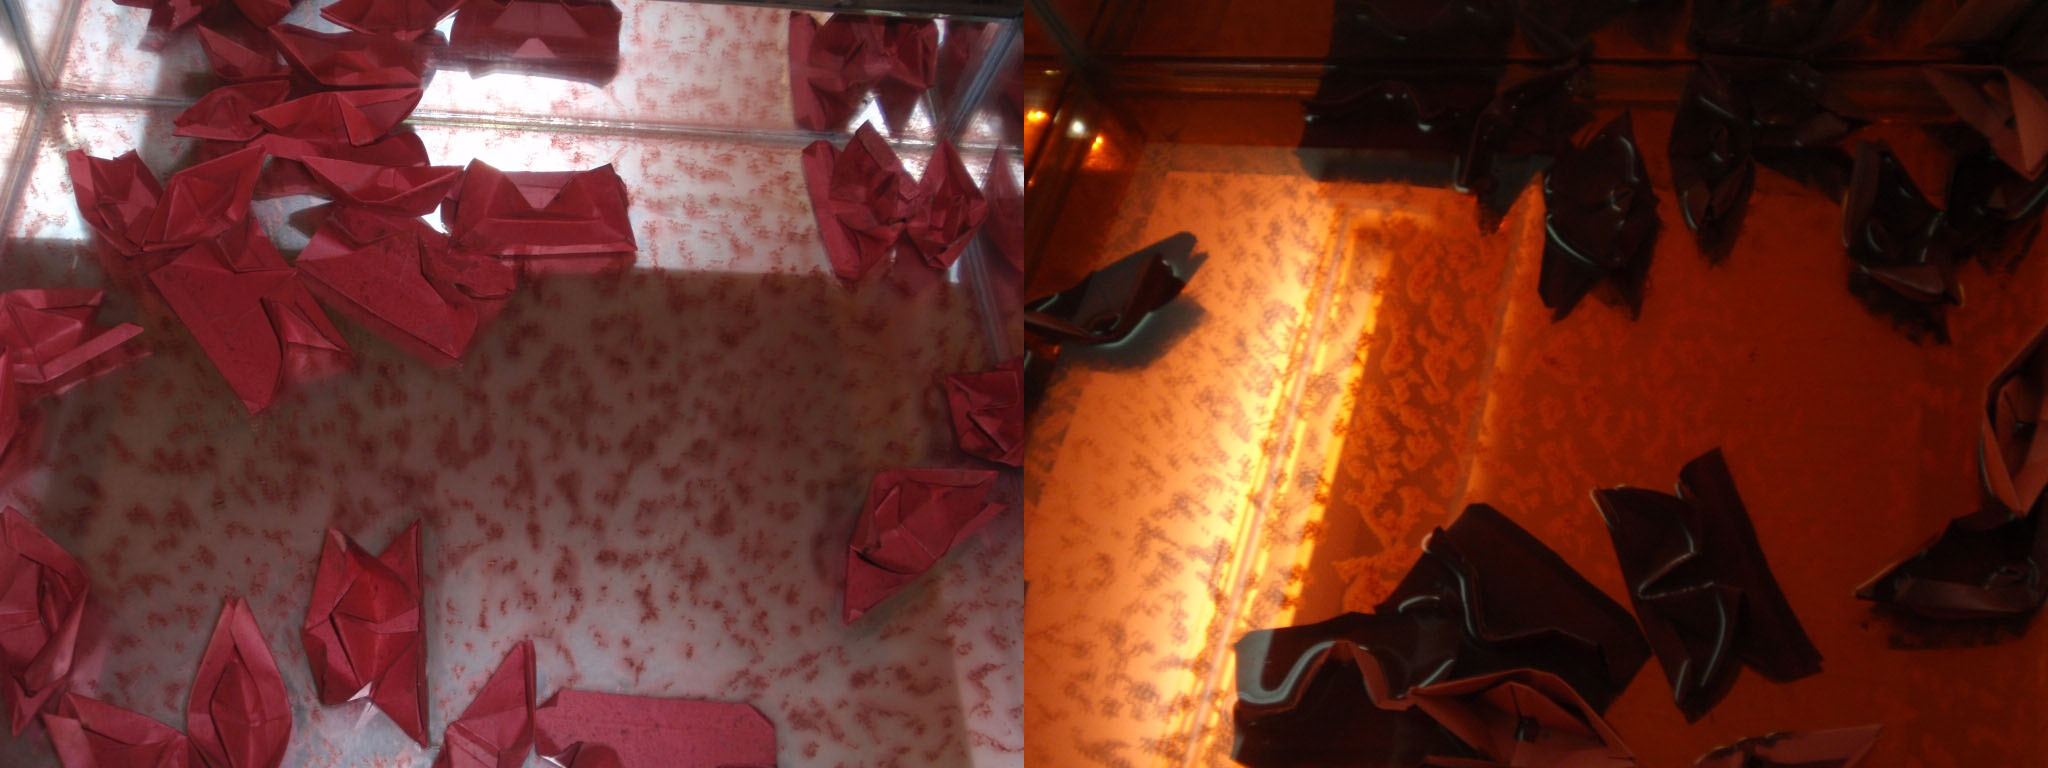 Deux détails de l’œuvre, gros plan sur les bateaux en papier rouge sang se reflétant dans le creux du miroir sur la table sous différents éclairages.